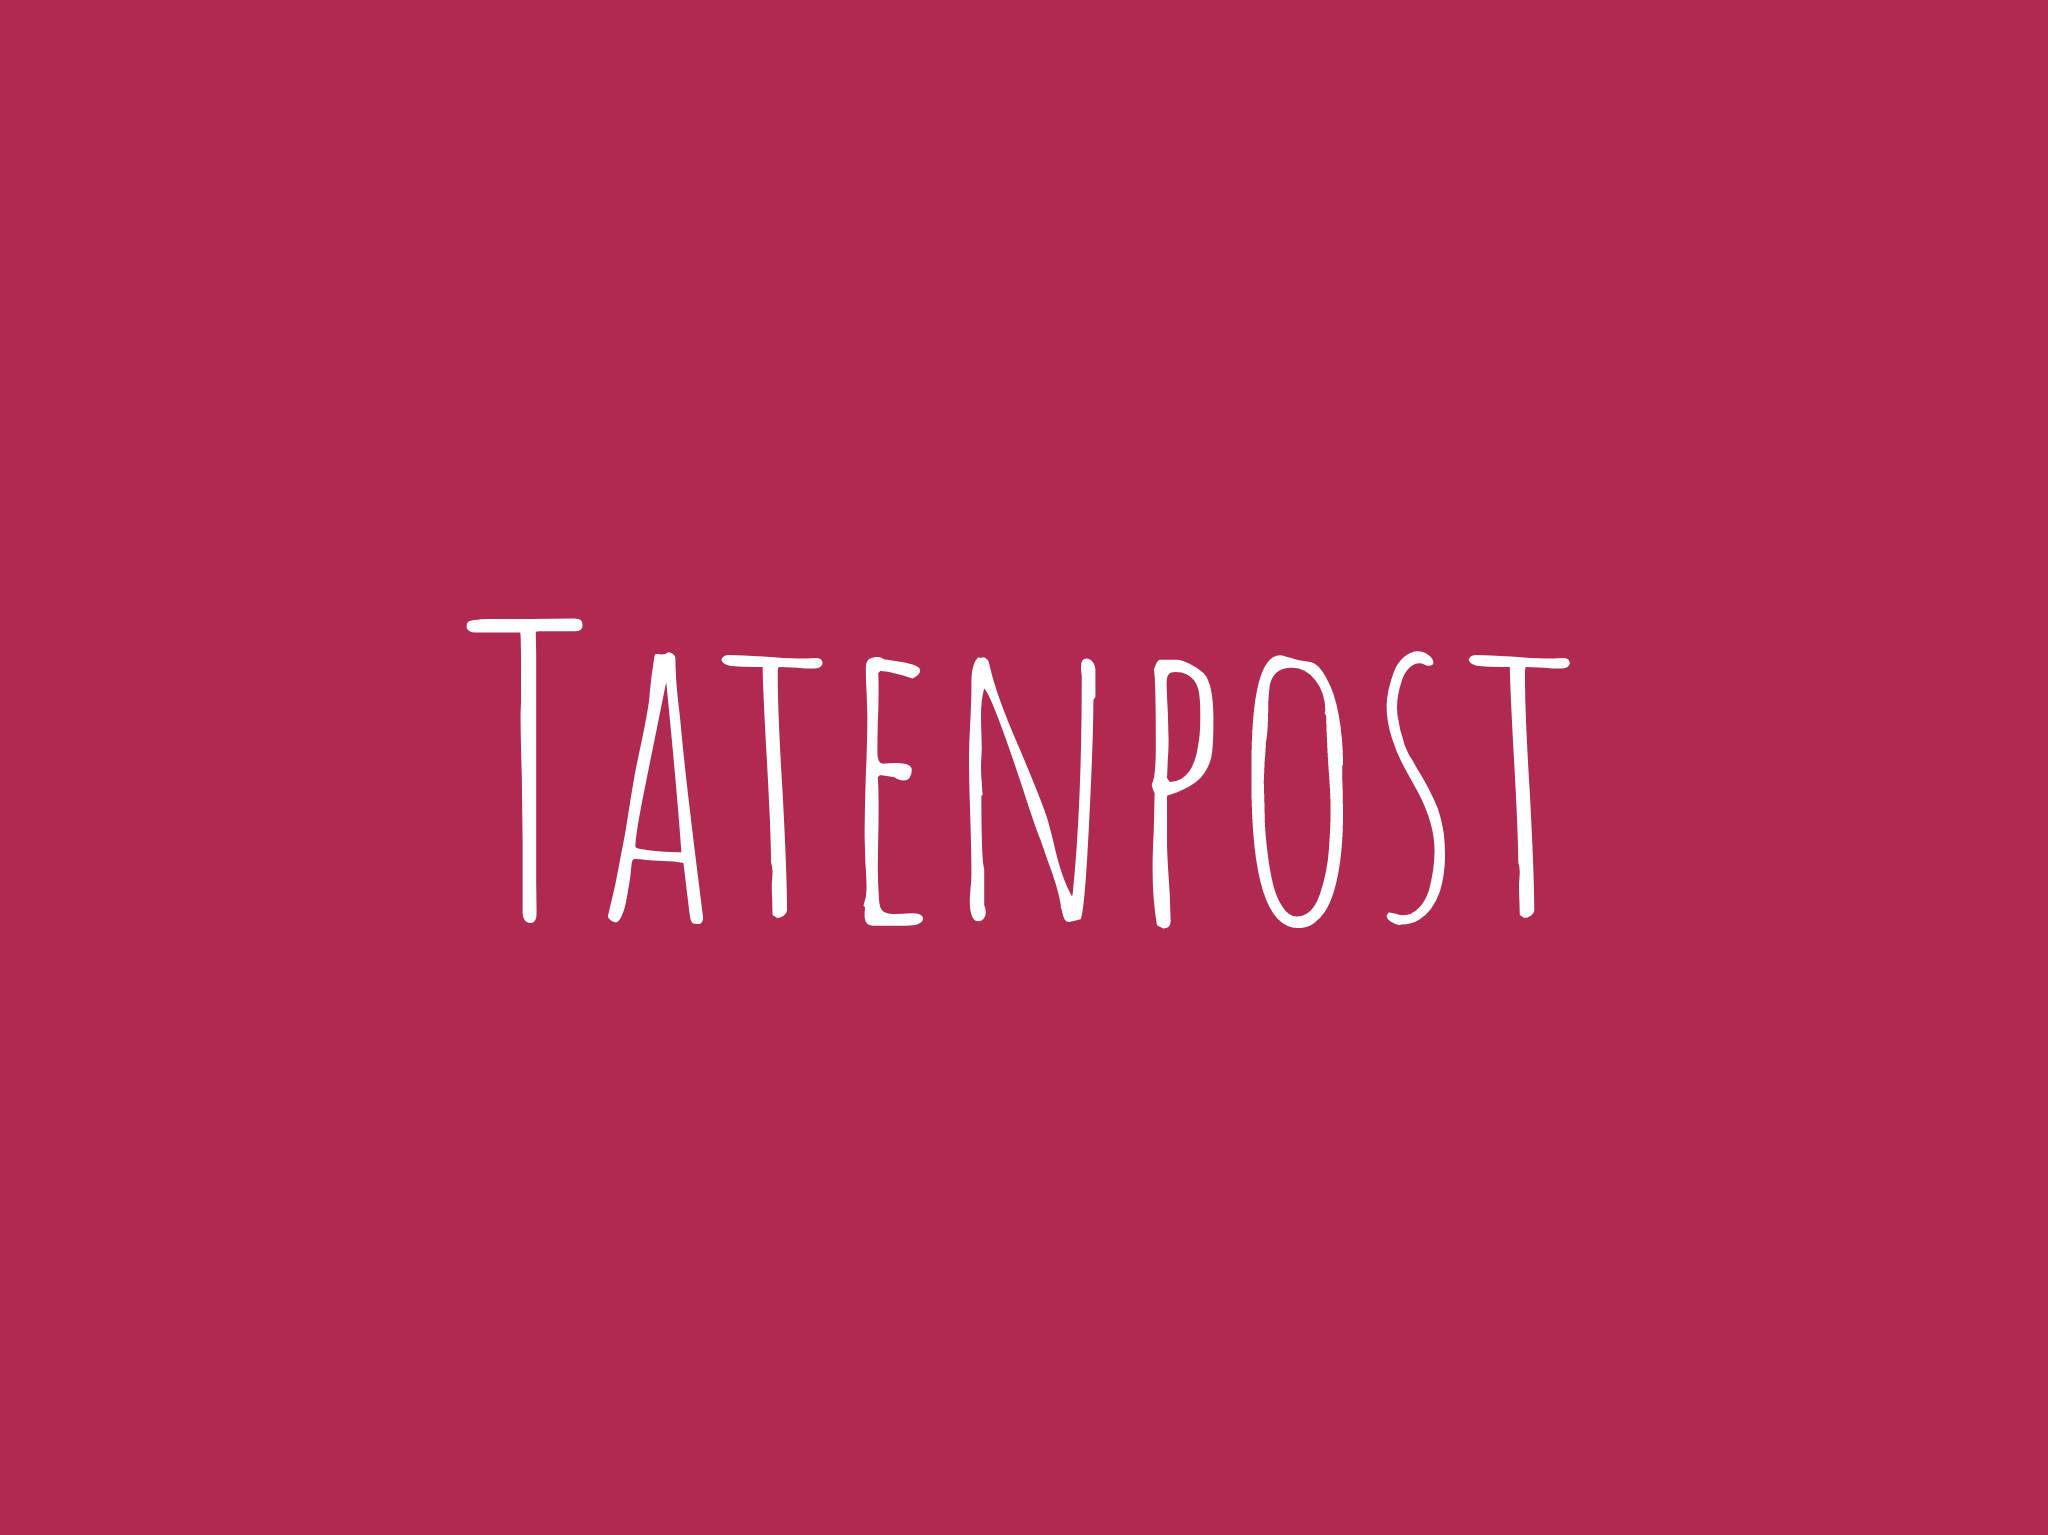 Tatenpost Newsletter